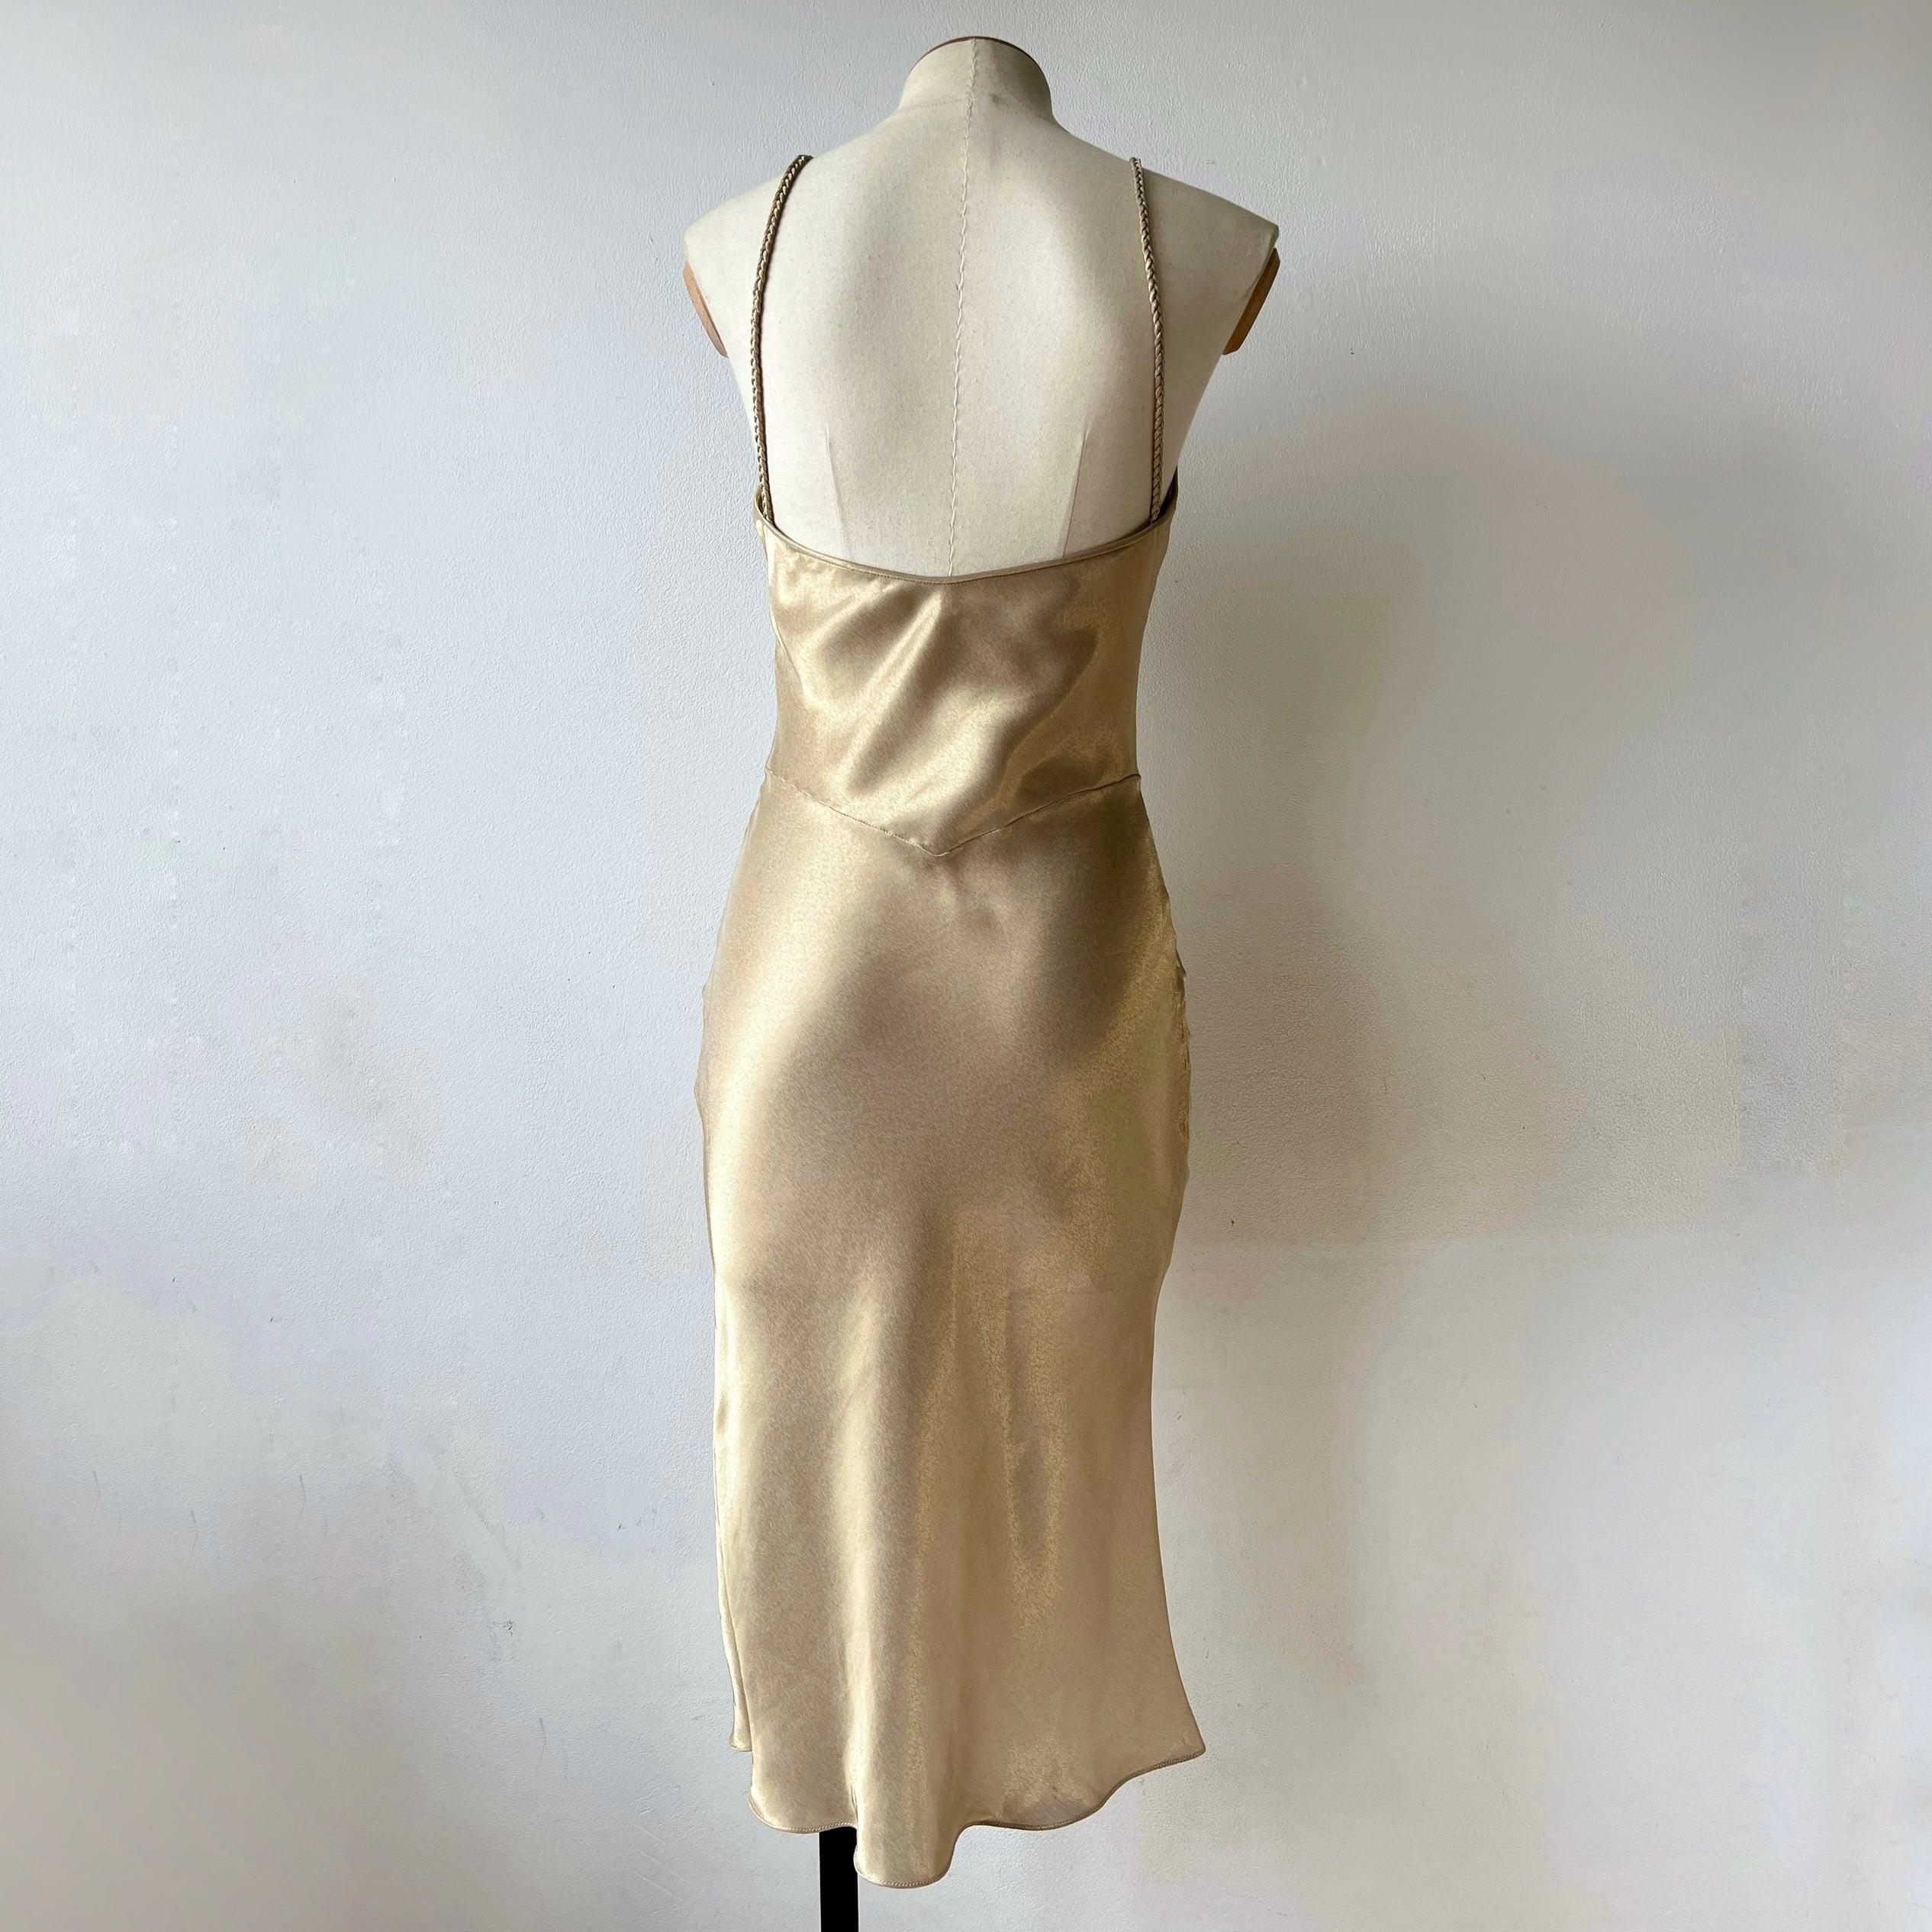 Robe Dior vintage des années 00 de couleur or et d'une brillance impeccable. La robe a une coupe hésitante et est un mélange de viscose, de soie et de polyester. La robe présente des bretelles tissées. 

Taille : fr 40, (circa S)
Condition : 8,5/10,